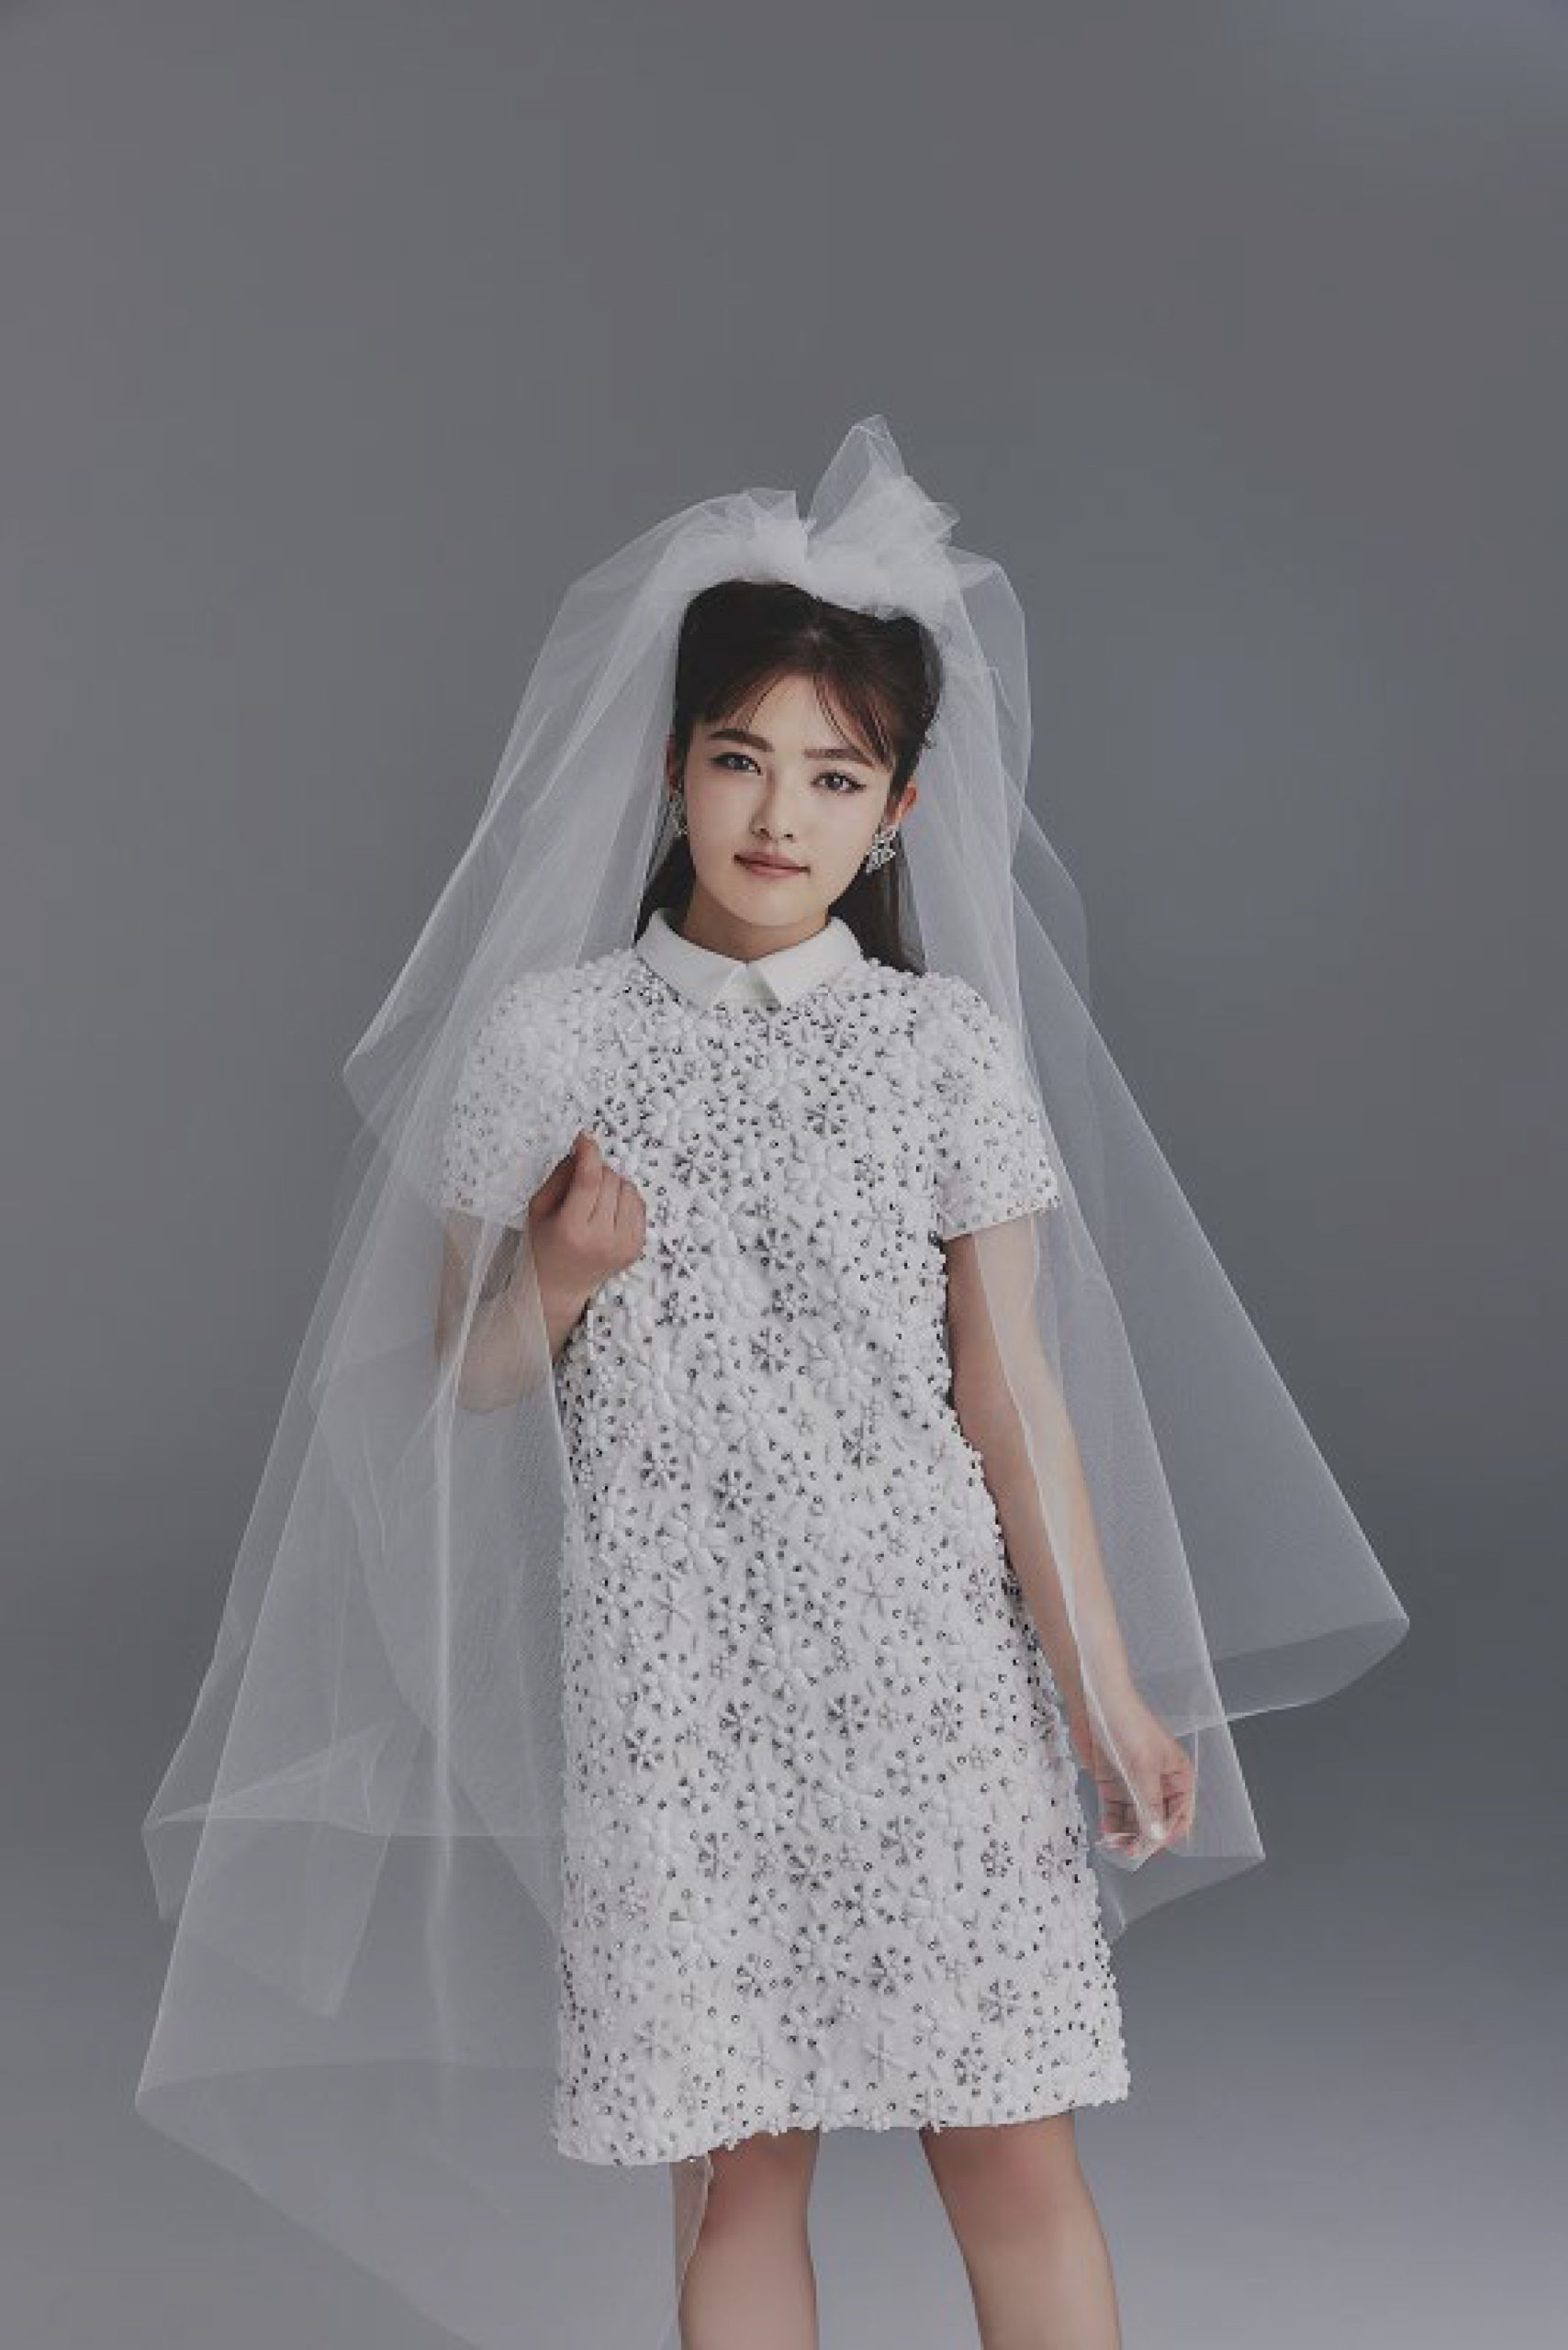 井上咲楽、初のウエディングドレスでかわいらしい花嫁に大変身